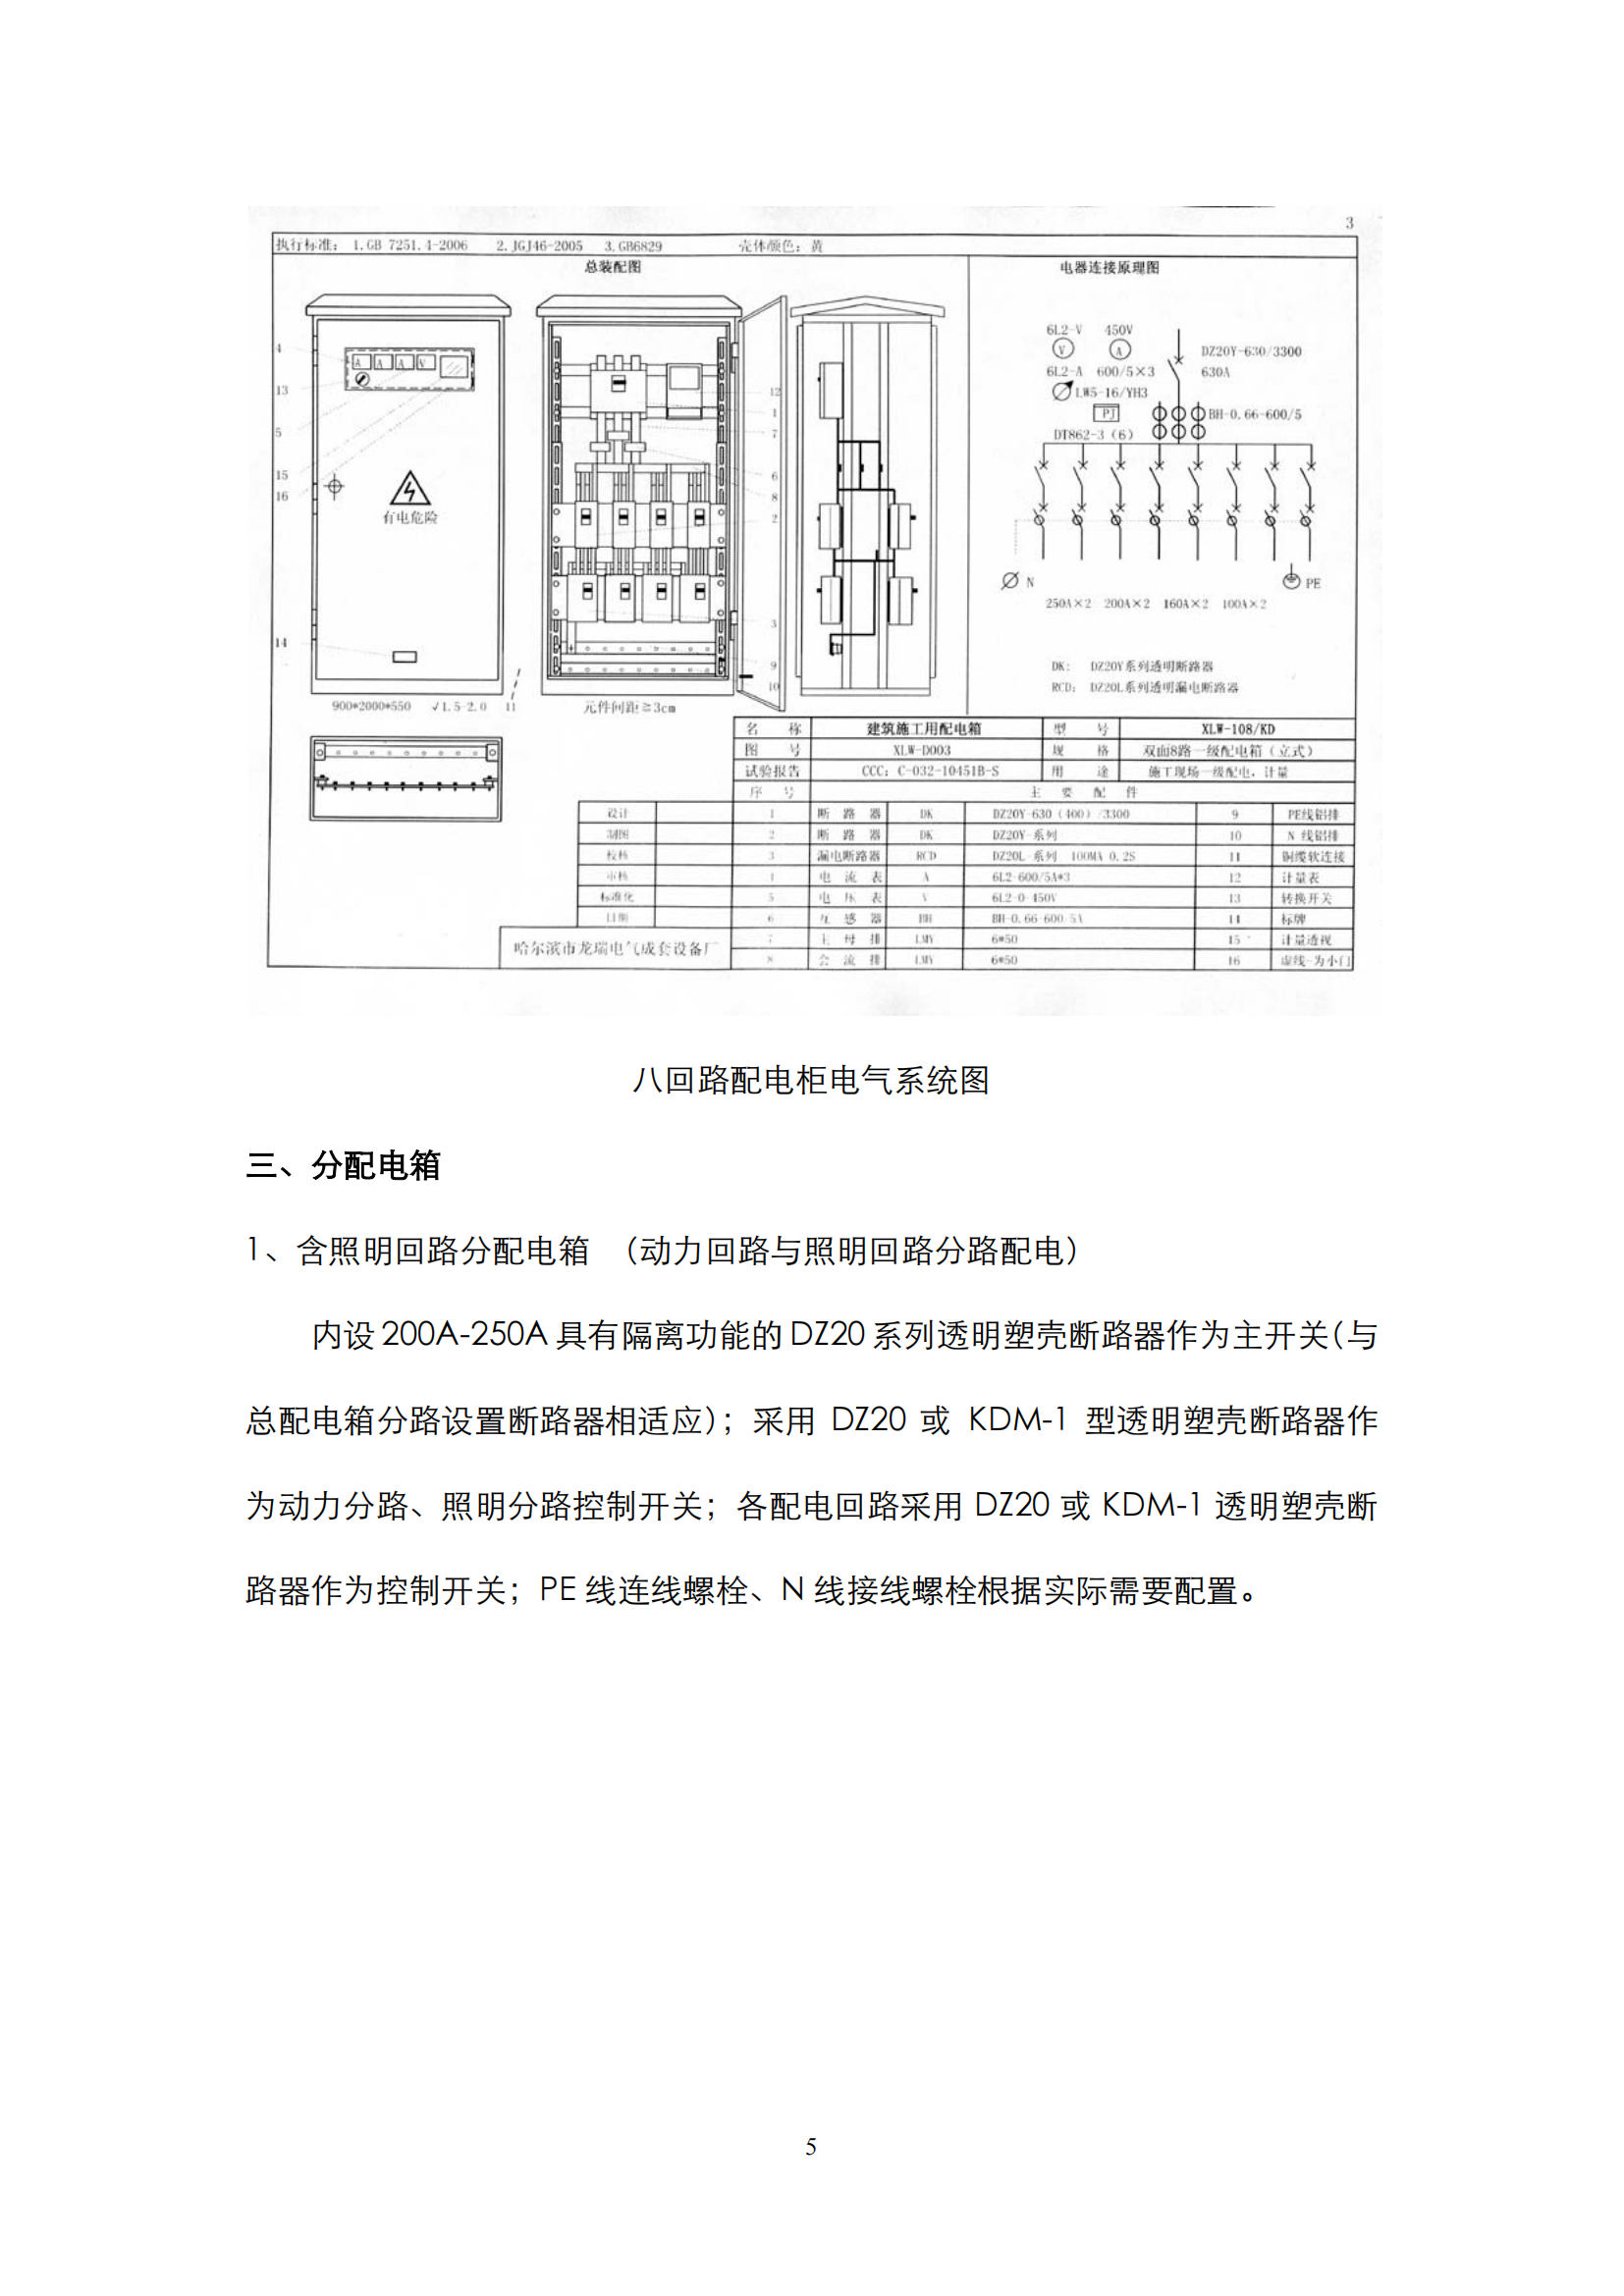 施工现场临时用电配电箱标准化配置图集插图(5)